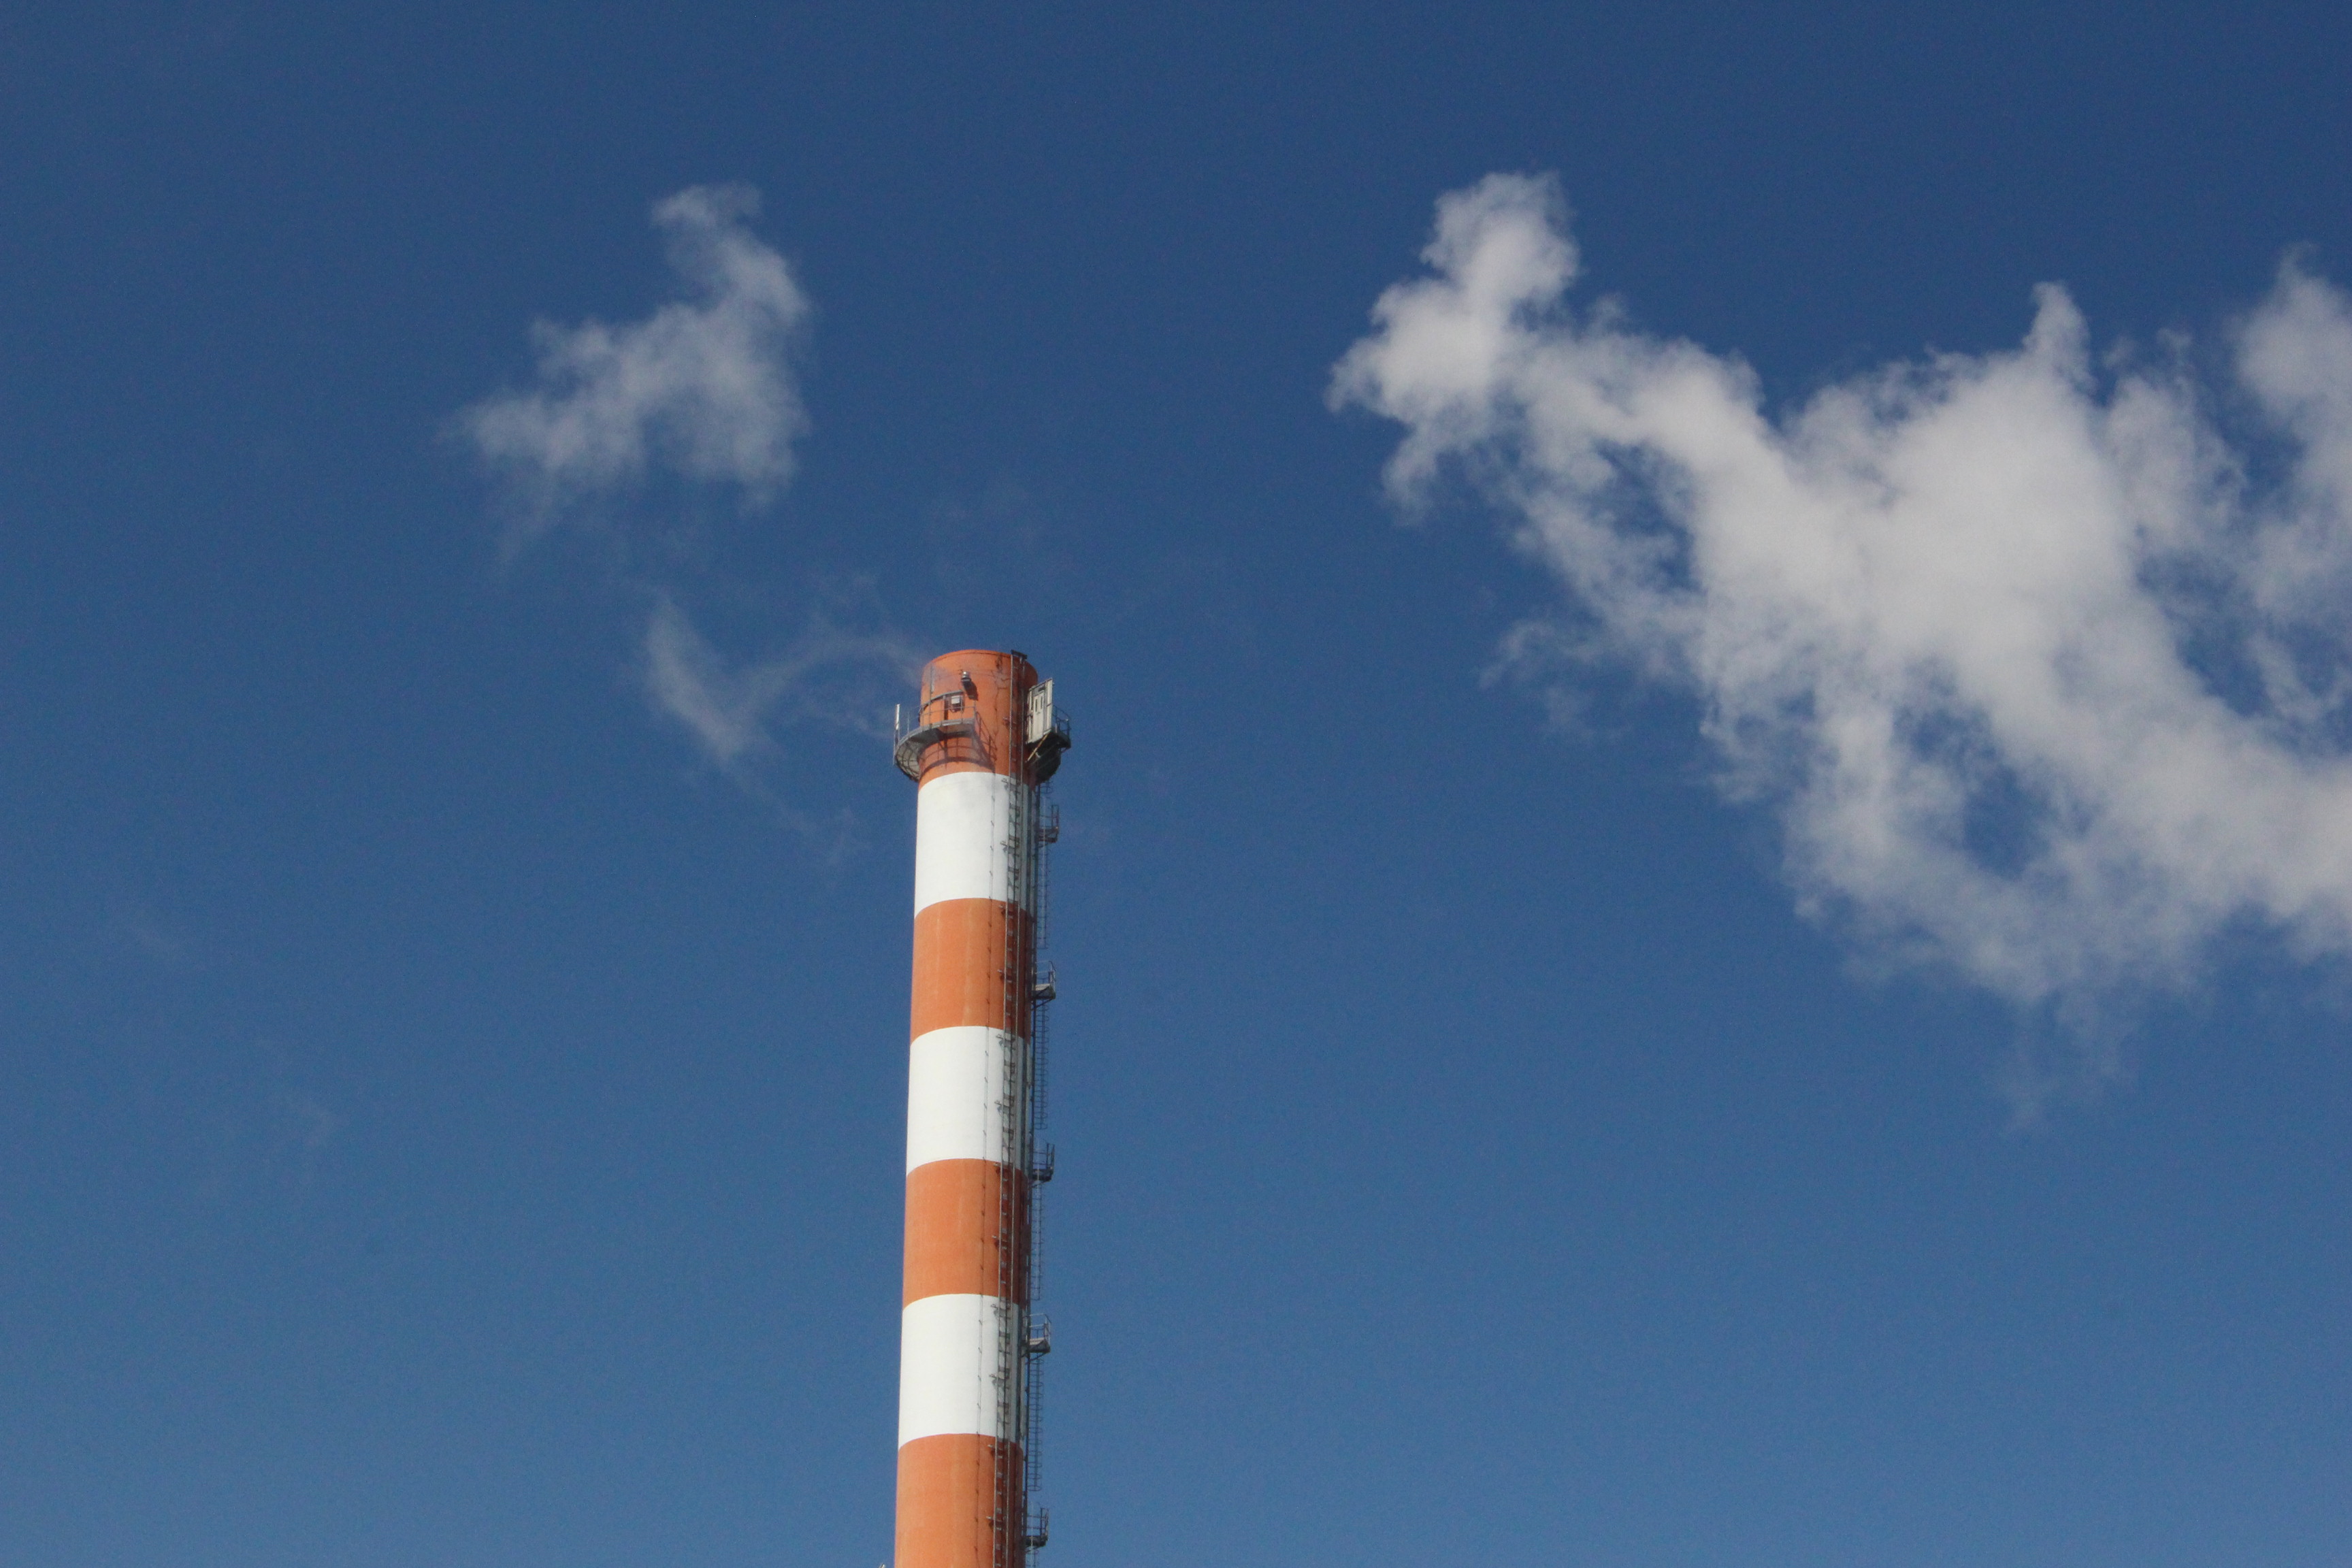 Plan de descarbonización considera cerrar 1.000 MW termoeléctricos en los primeros 10 años